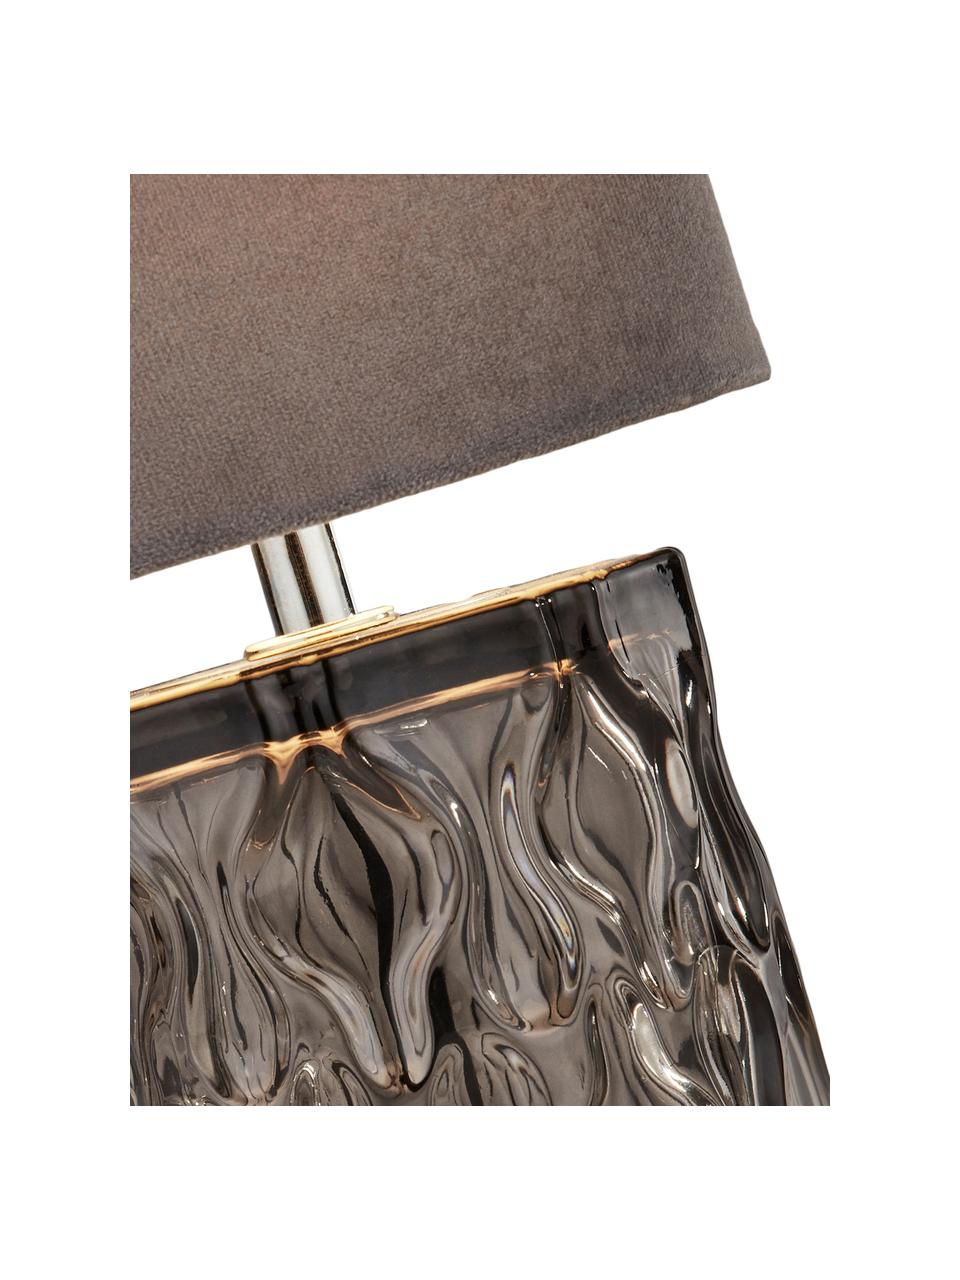 Kleine Samt-Tischlampe Tina in Grau, Lampenschirm: Samt, Lampenfuß: Glas, Dekor: Metall, galvanisiert, Grau, Ø 15 x H 30 cm